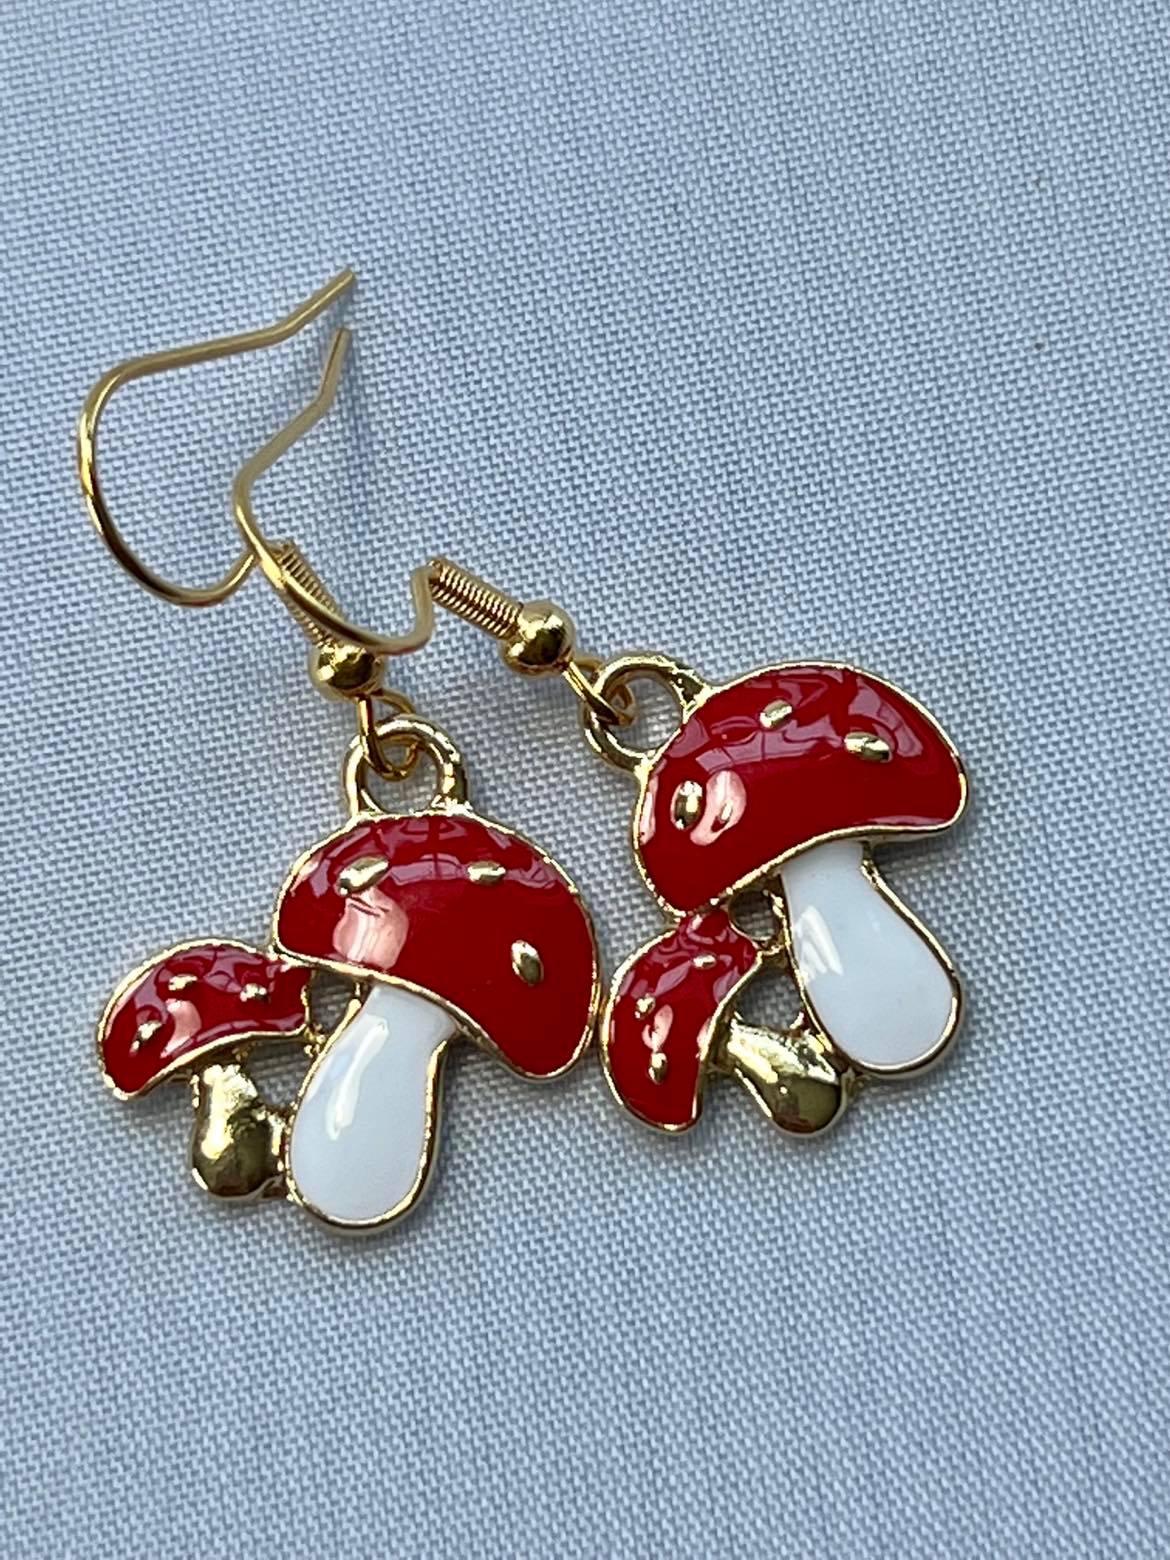 Red Mushroom / Shroom Dangle Earrings